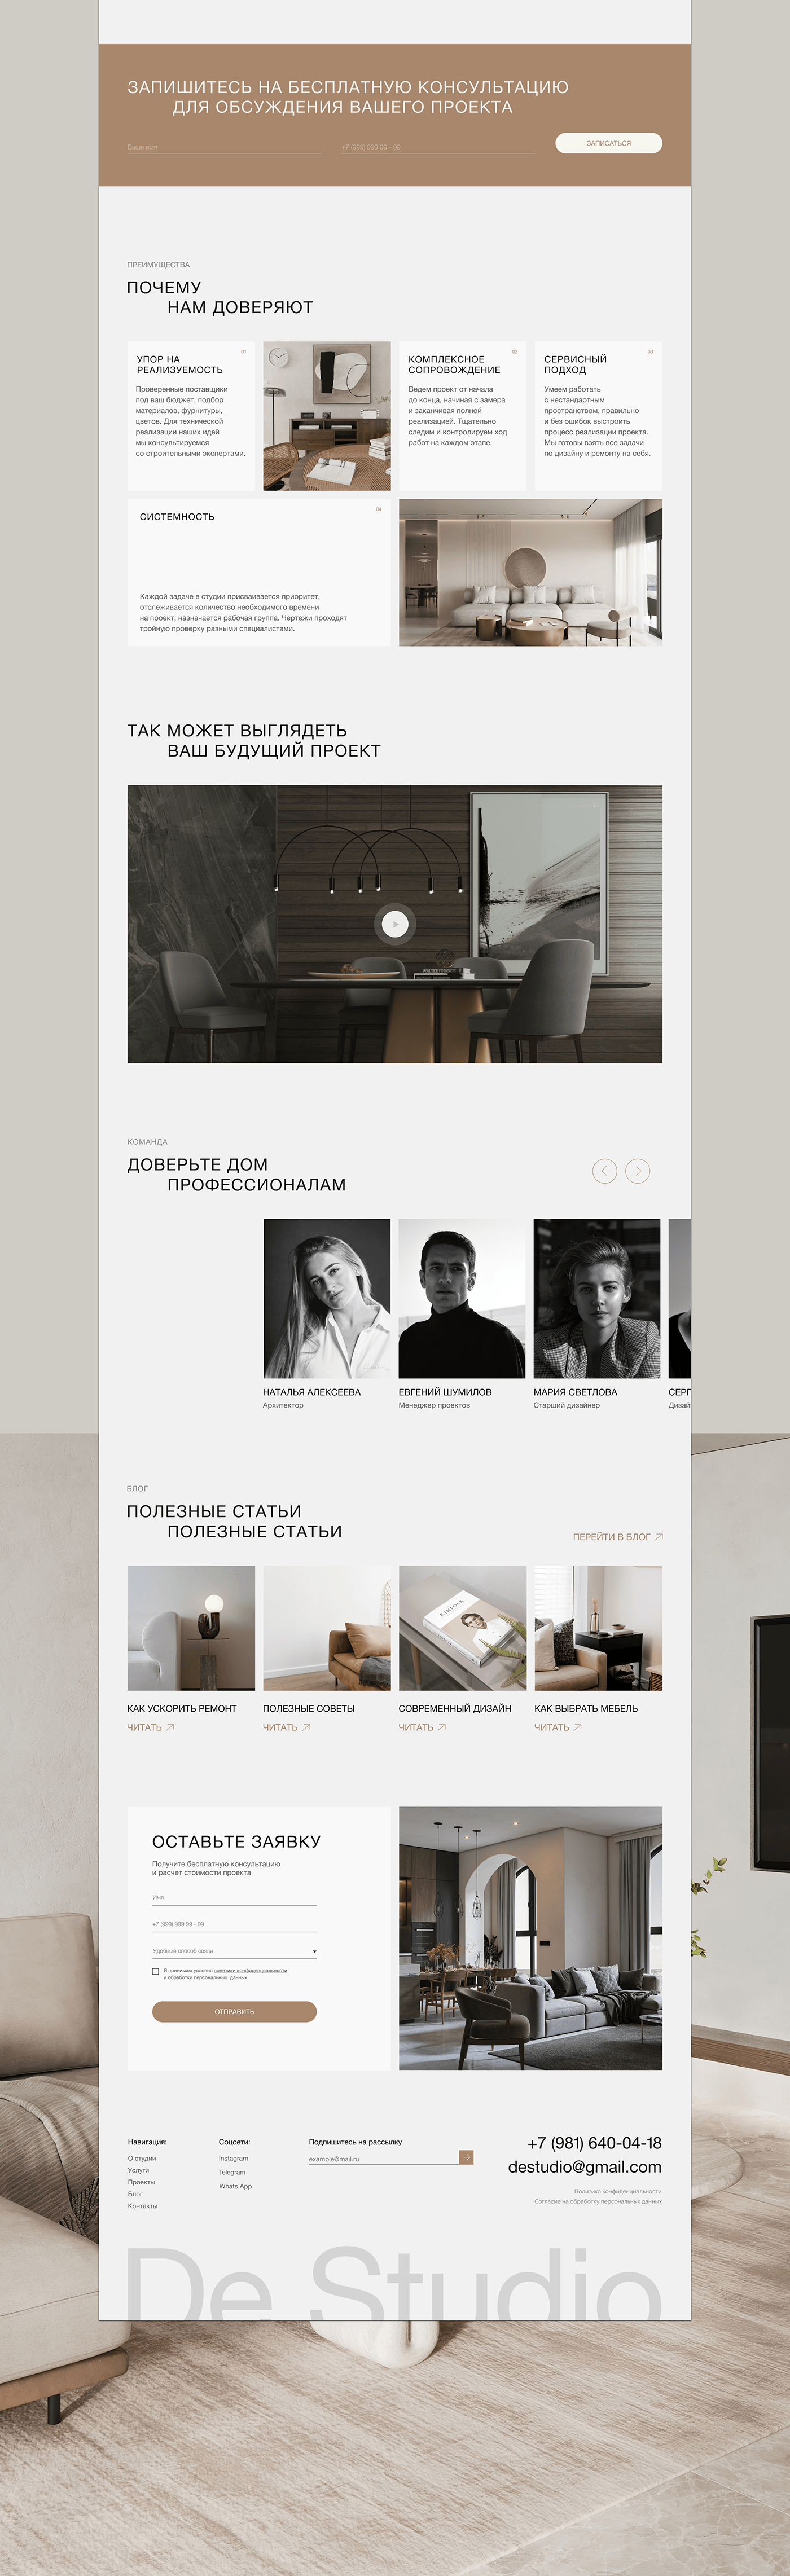 Website DeStudio | Interior design studio — Изображение №11 — Интерфейсы на Dprofile